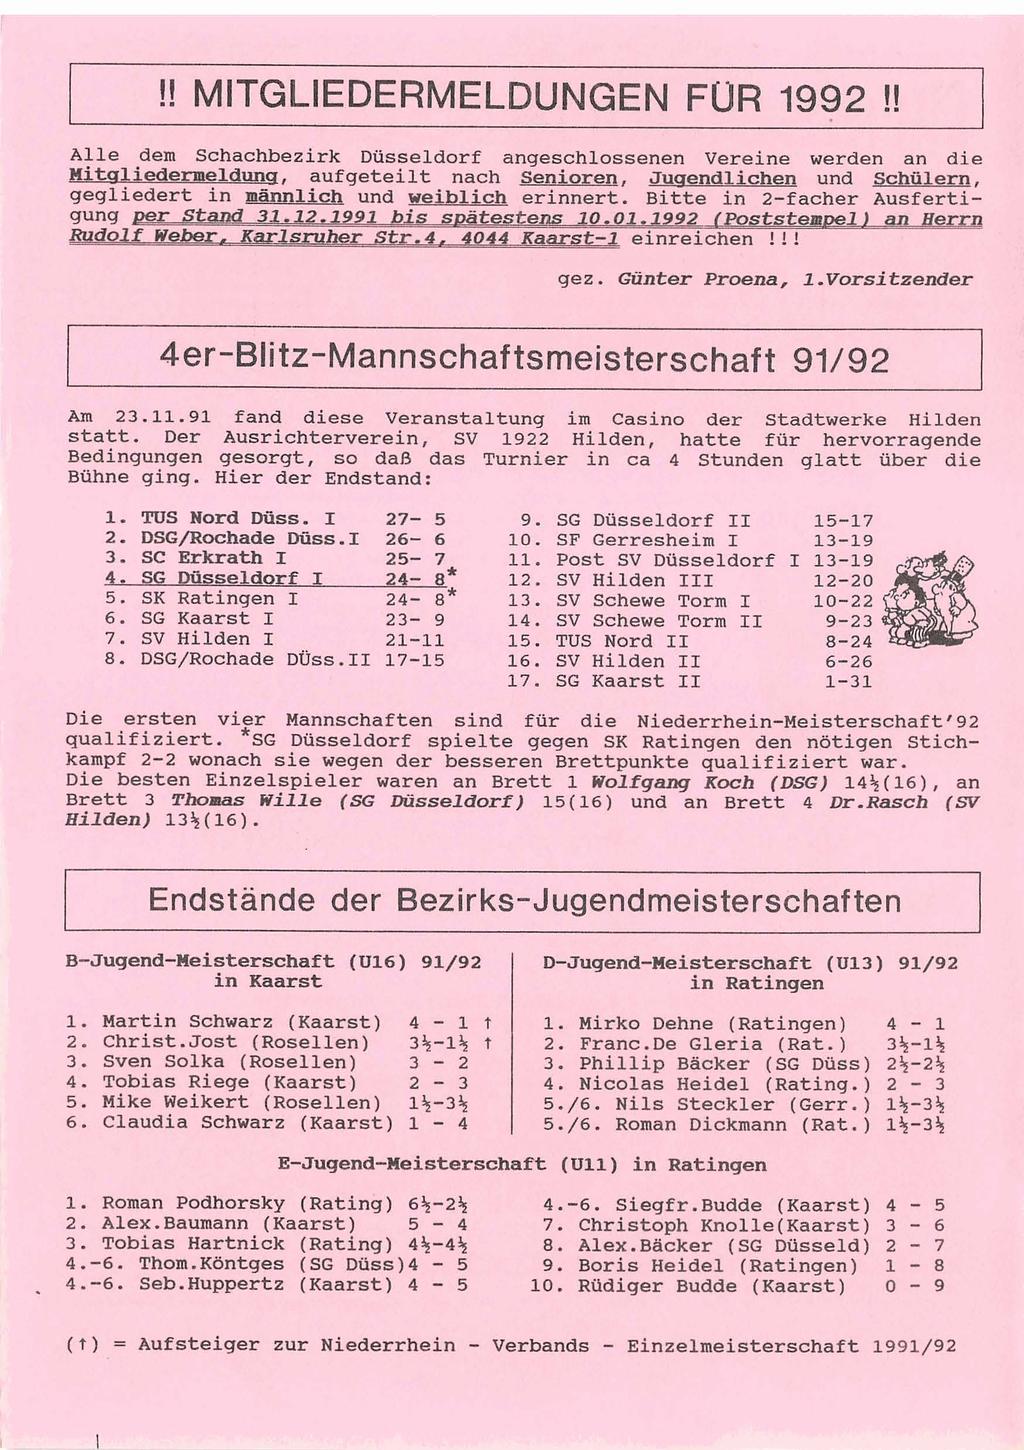 !! MITGLIEDERMELDUNGEN FUR 1992!! Alle.dem Schachbezirk Düsseldorf anges.